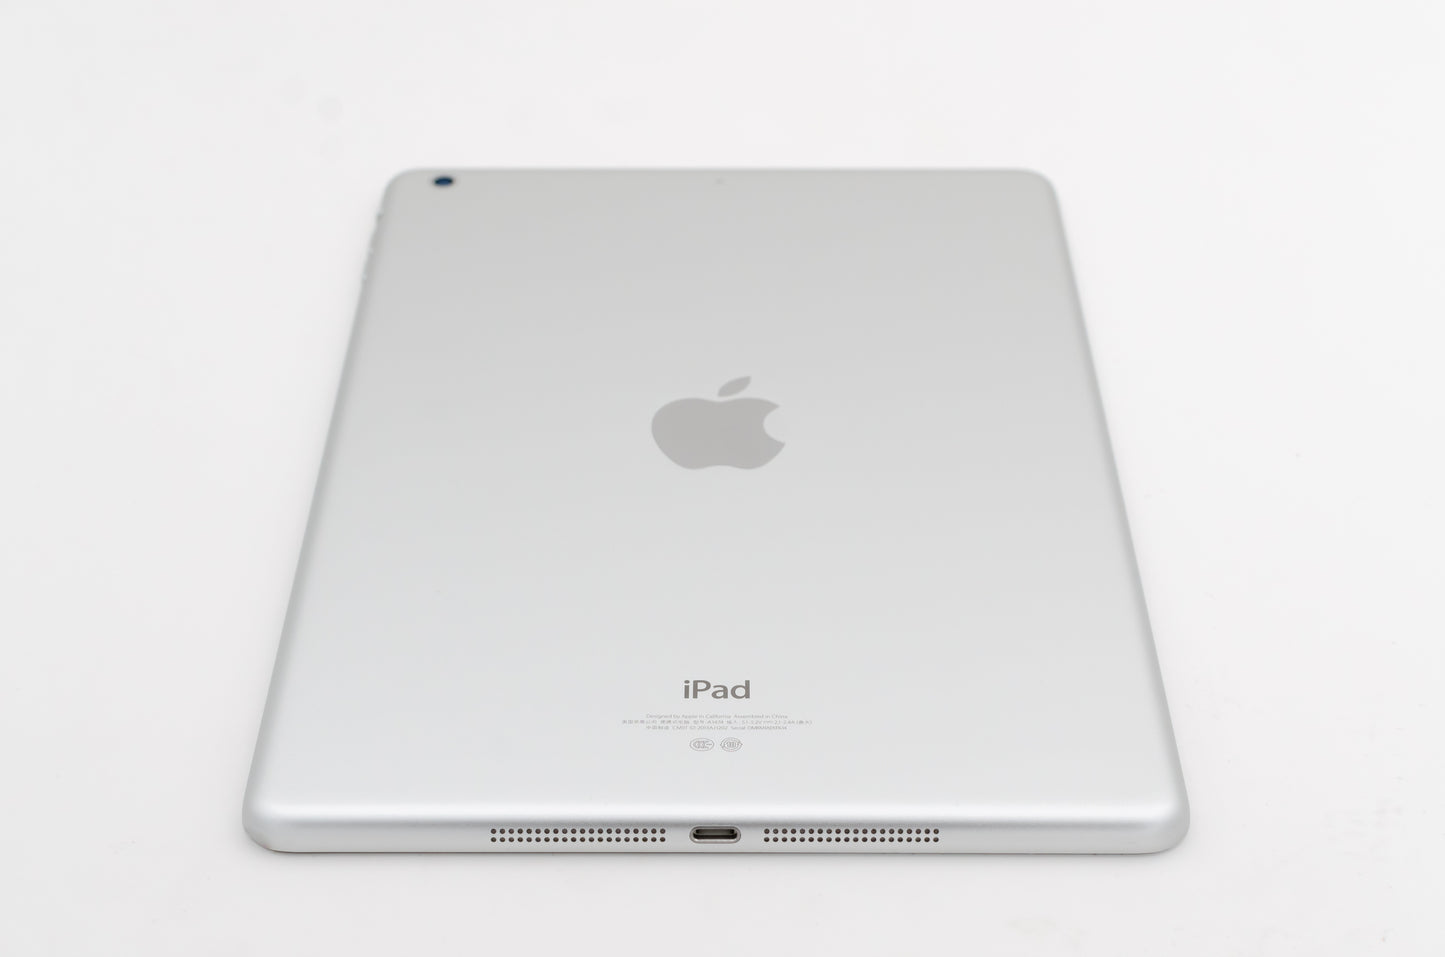 apple-2013-9.7-inch-ipad-air-1-a1474-silver/white-5